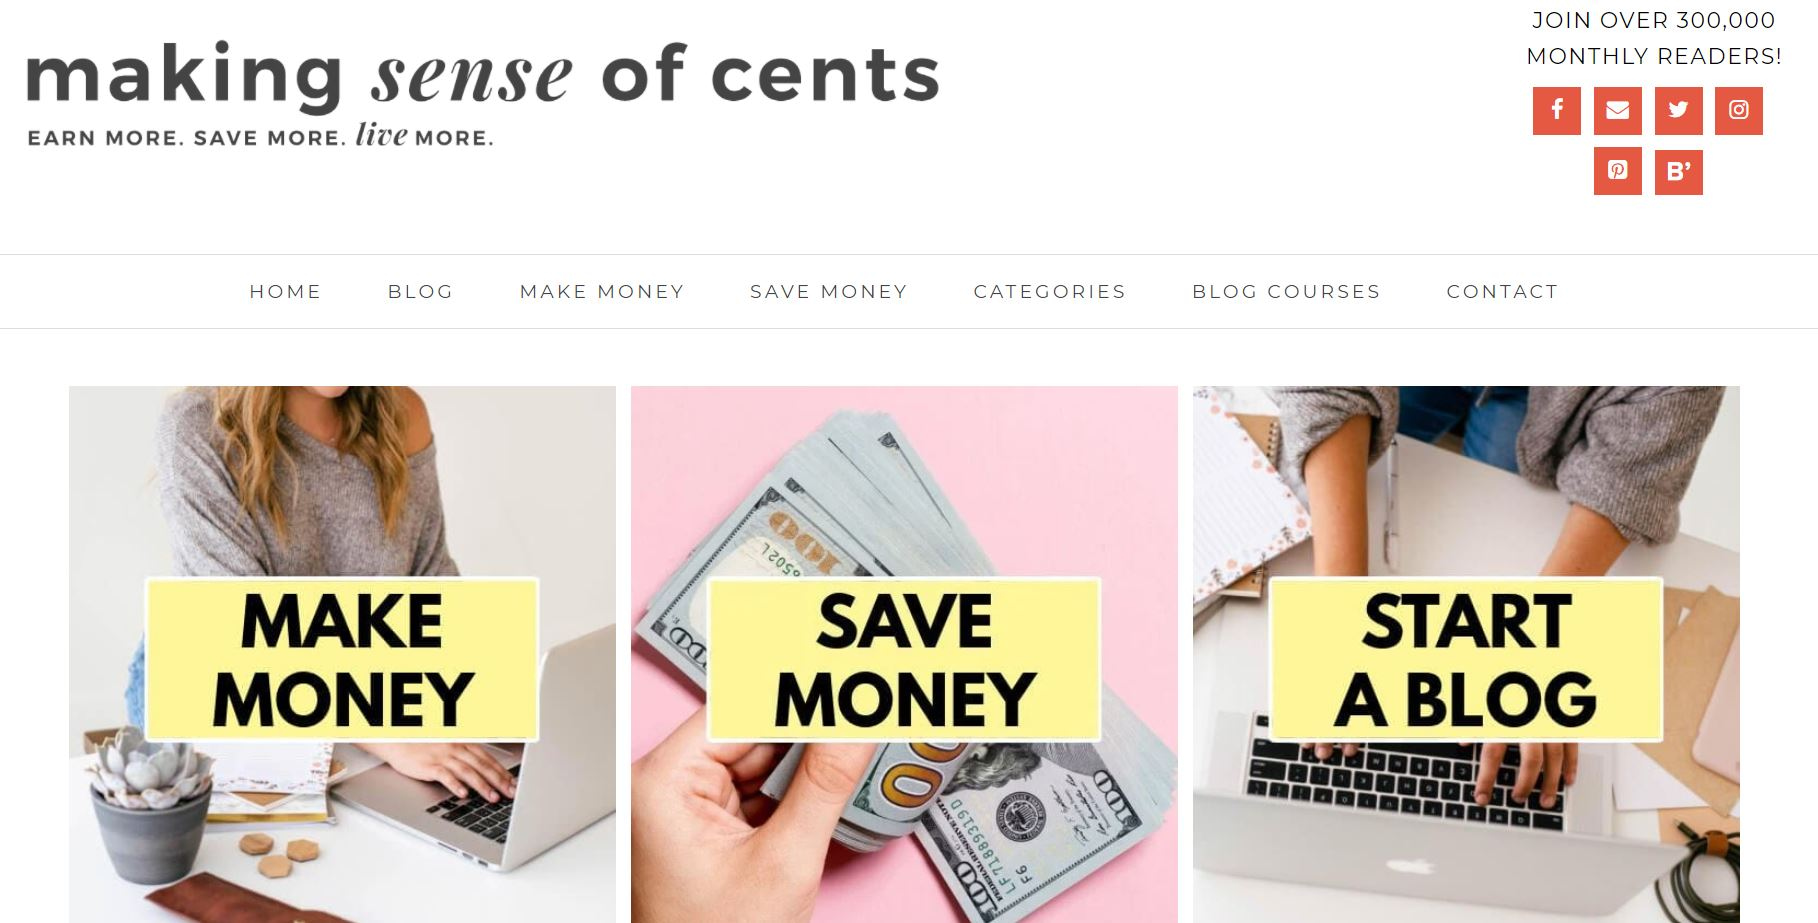 Making Sense of Cents 是一個關於在線賺錢的博客，這是 2022 年值得探索的最賺錢的博客領域之一。